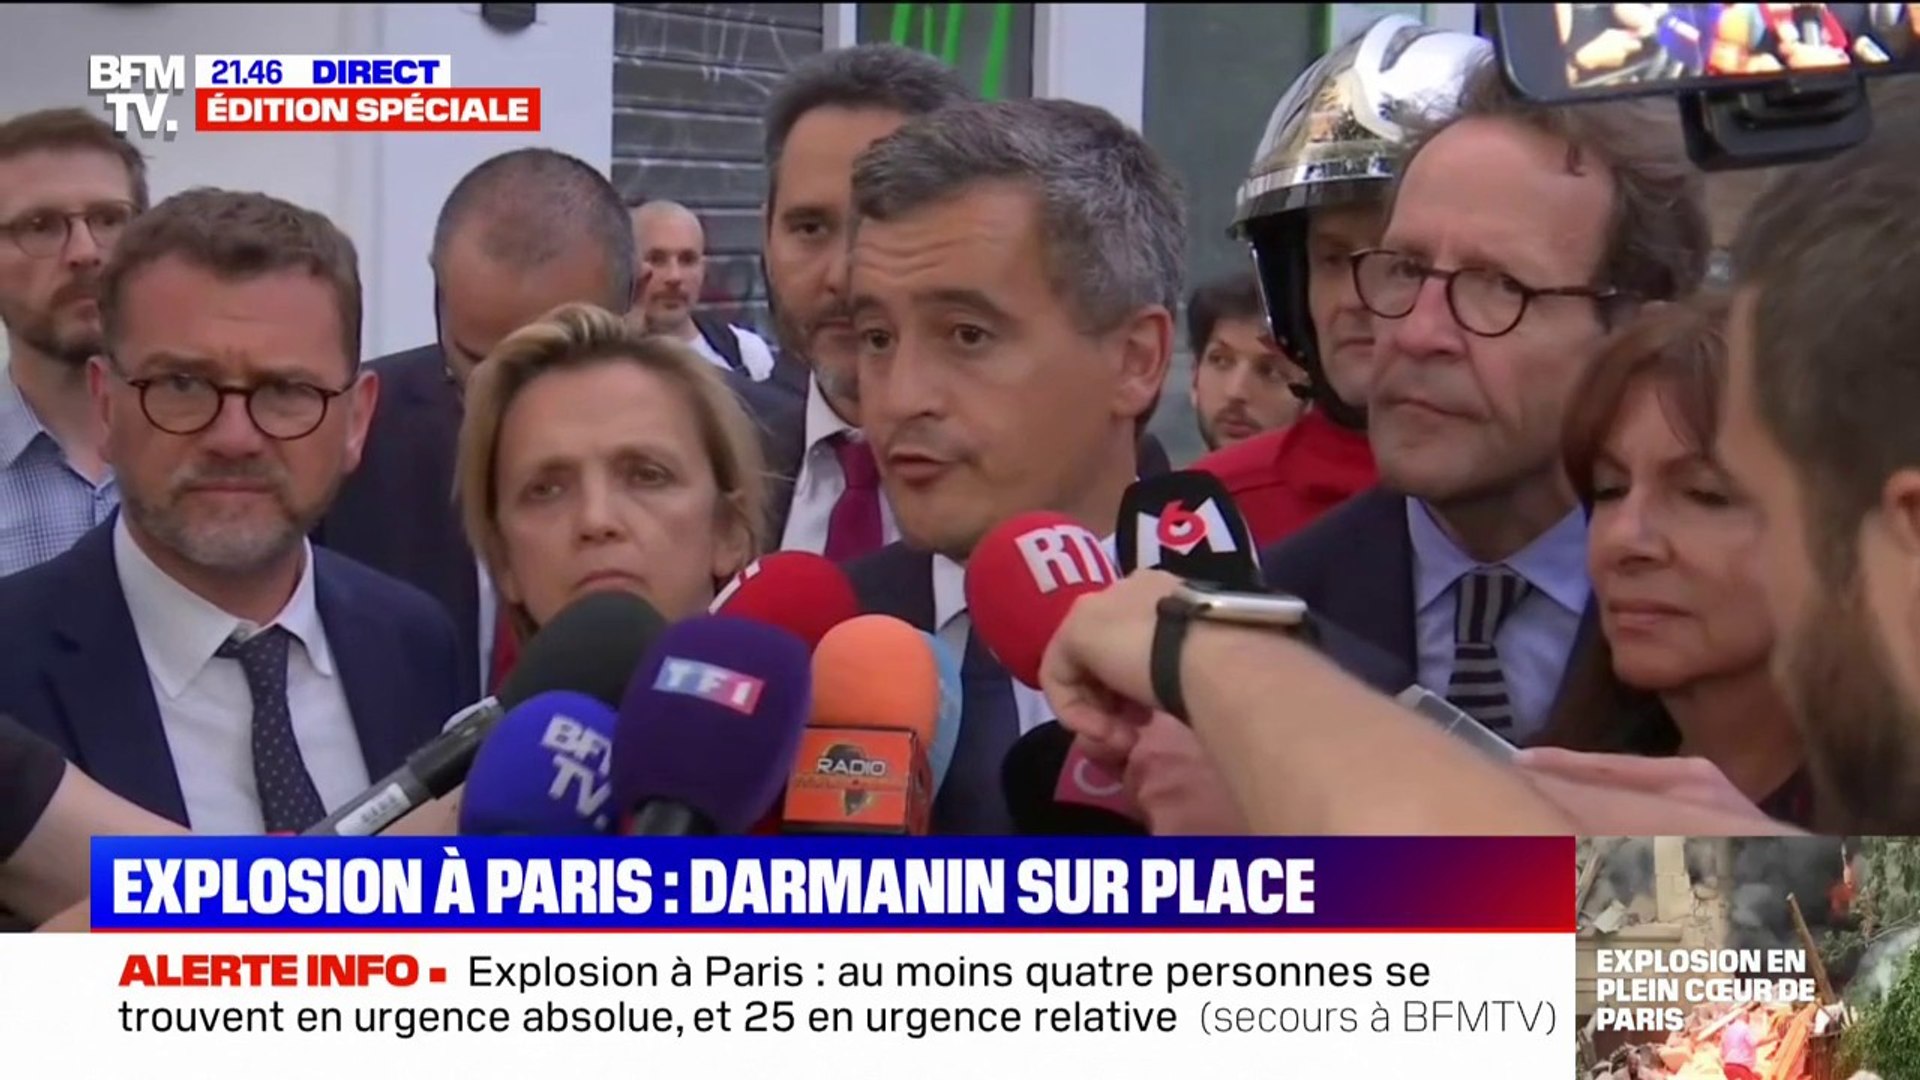 Explosion à Paris: Gérald Darmanin donne le bilan de "33 blessés en urgence  relative et 4 blessés en urgence absolue" avec "pronostics vitaux engagés"  - Vidéo Dailymotion